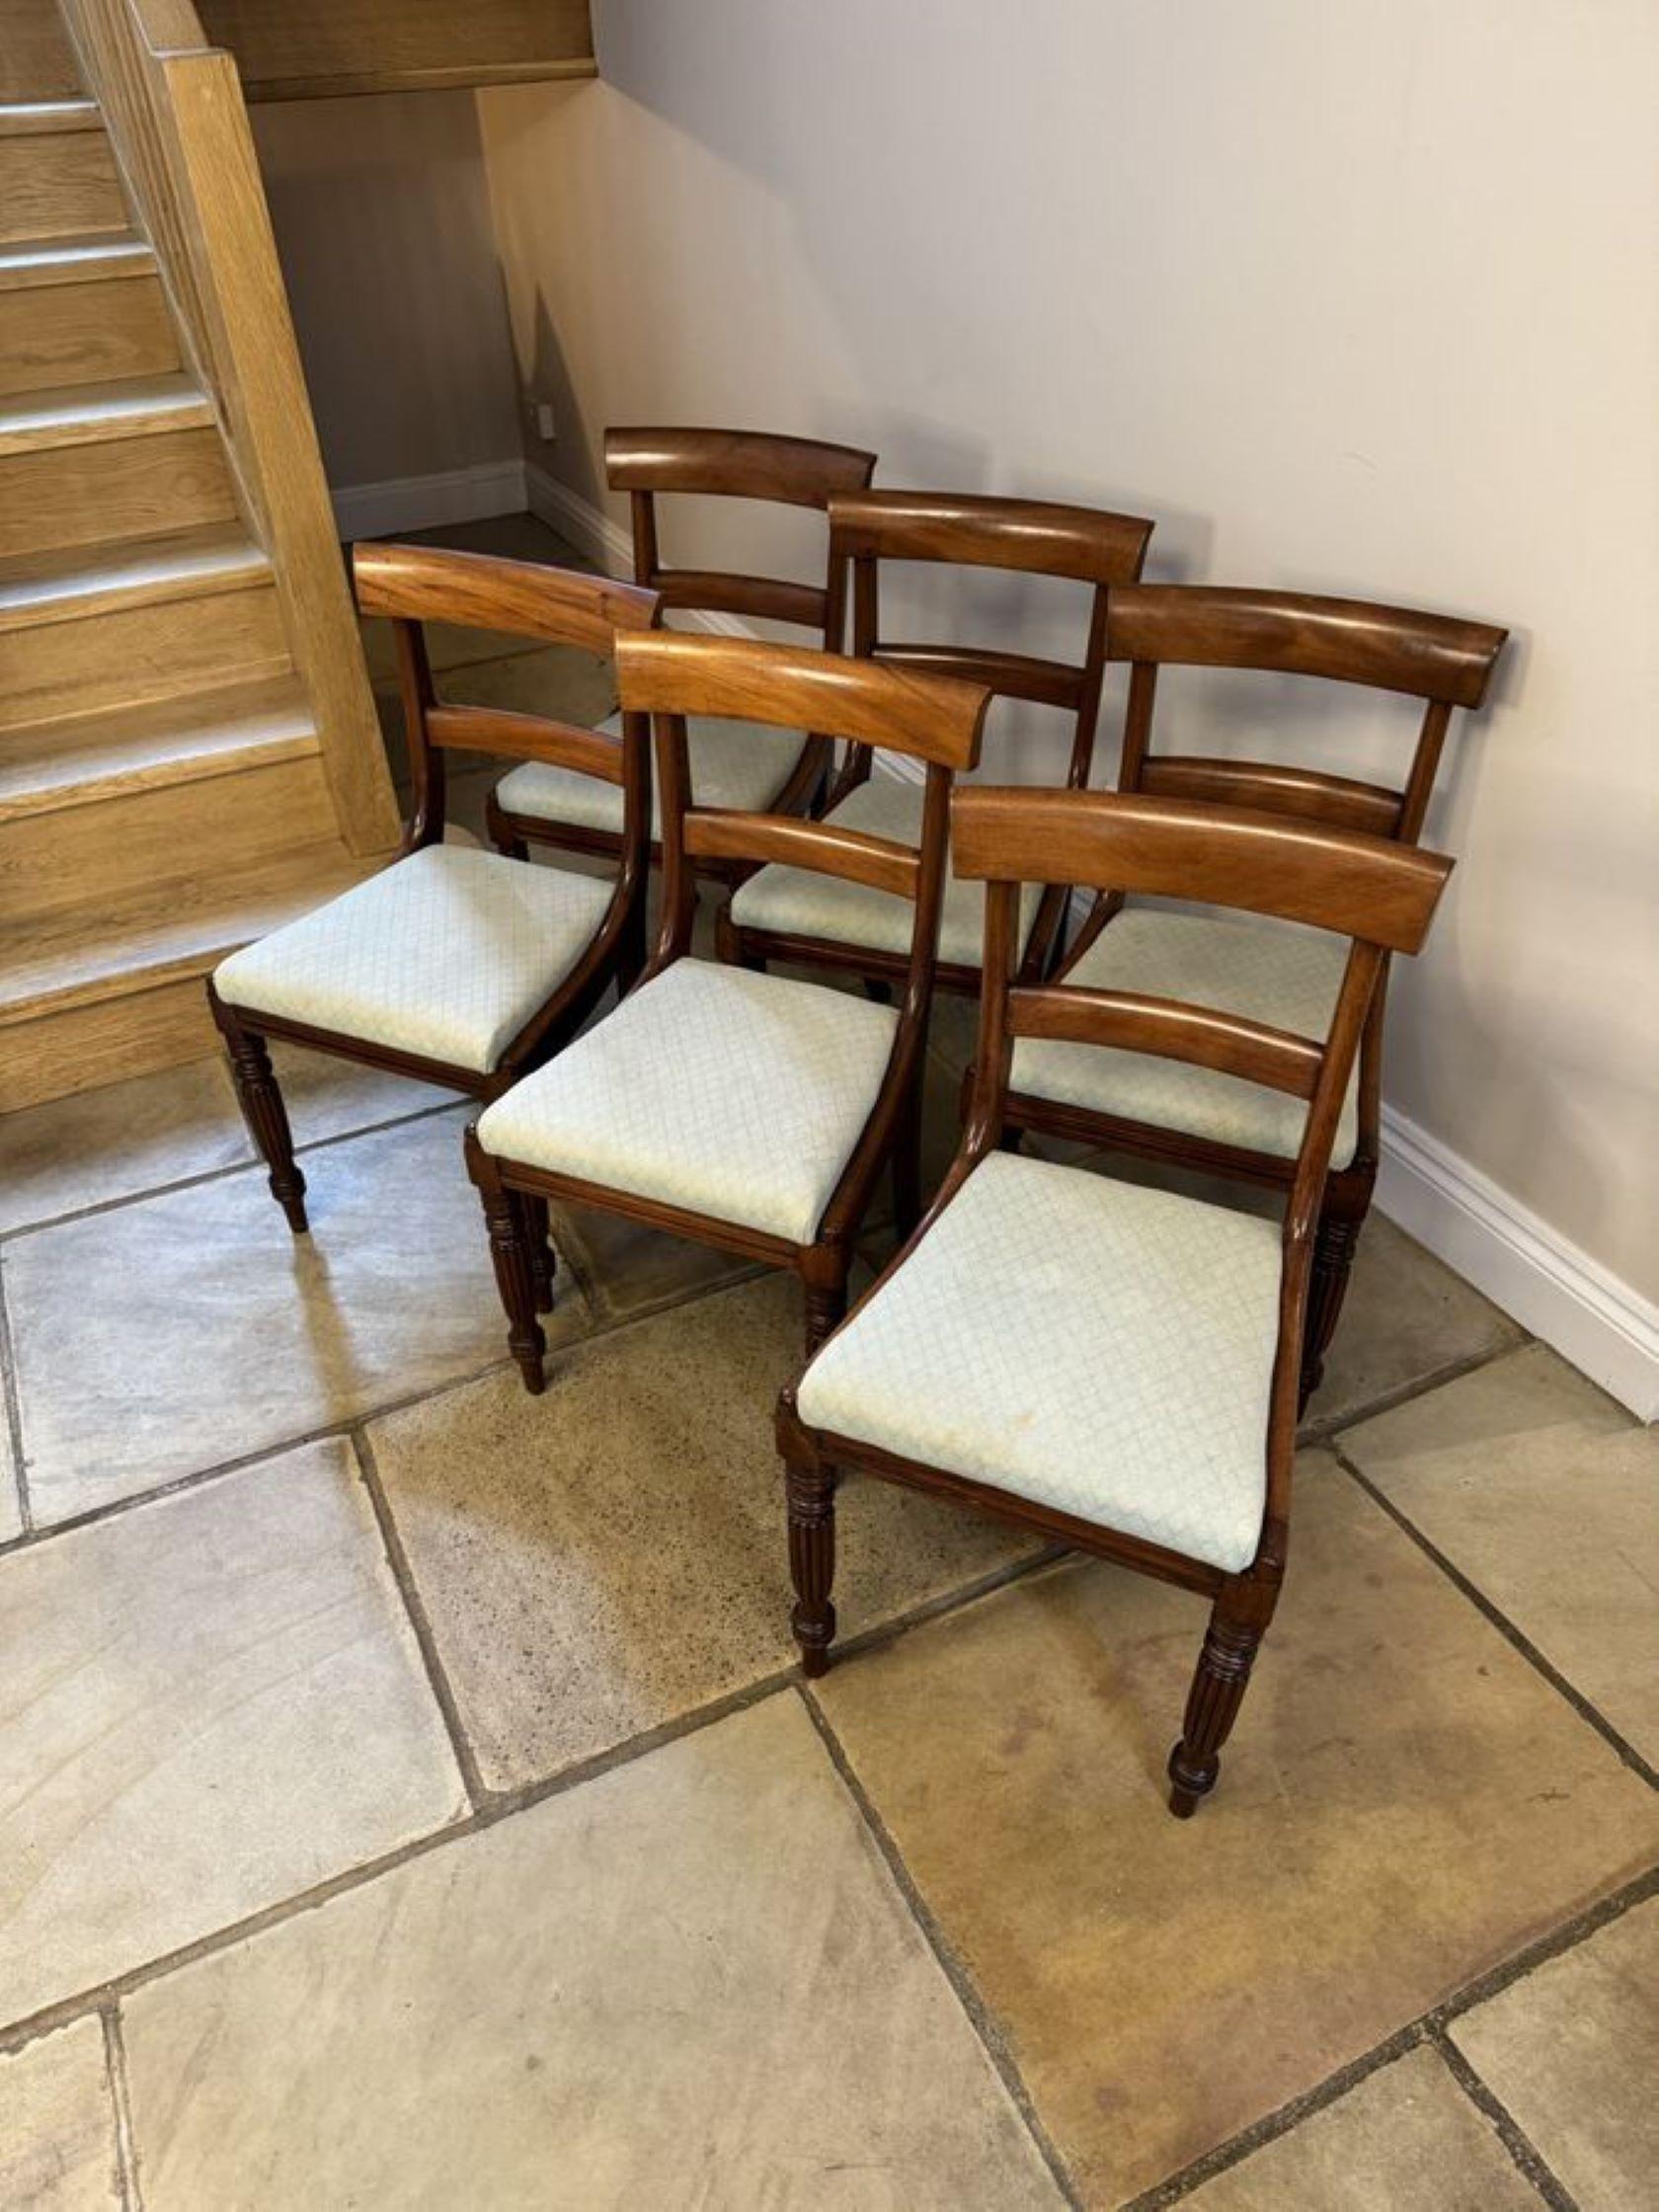 Ensemble de six chaises de salle à manger en acajou de style Regency, avec un dossier en acajou figuré de qualité, reposant sur d'élégants pieds fuselés cannelés à l'avant et sur des pieds balayés à l'arrière.

D. 1830